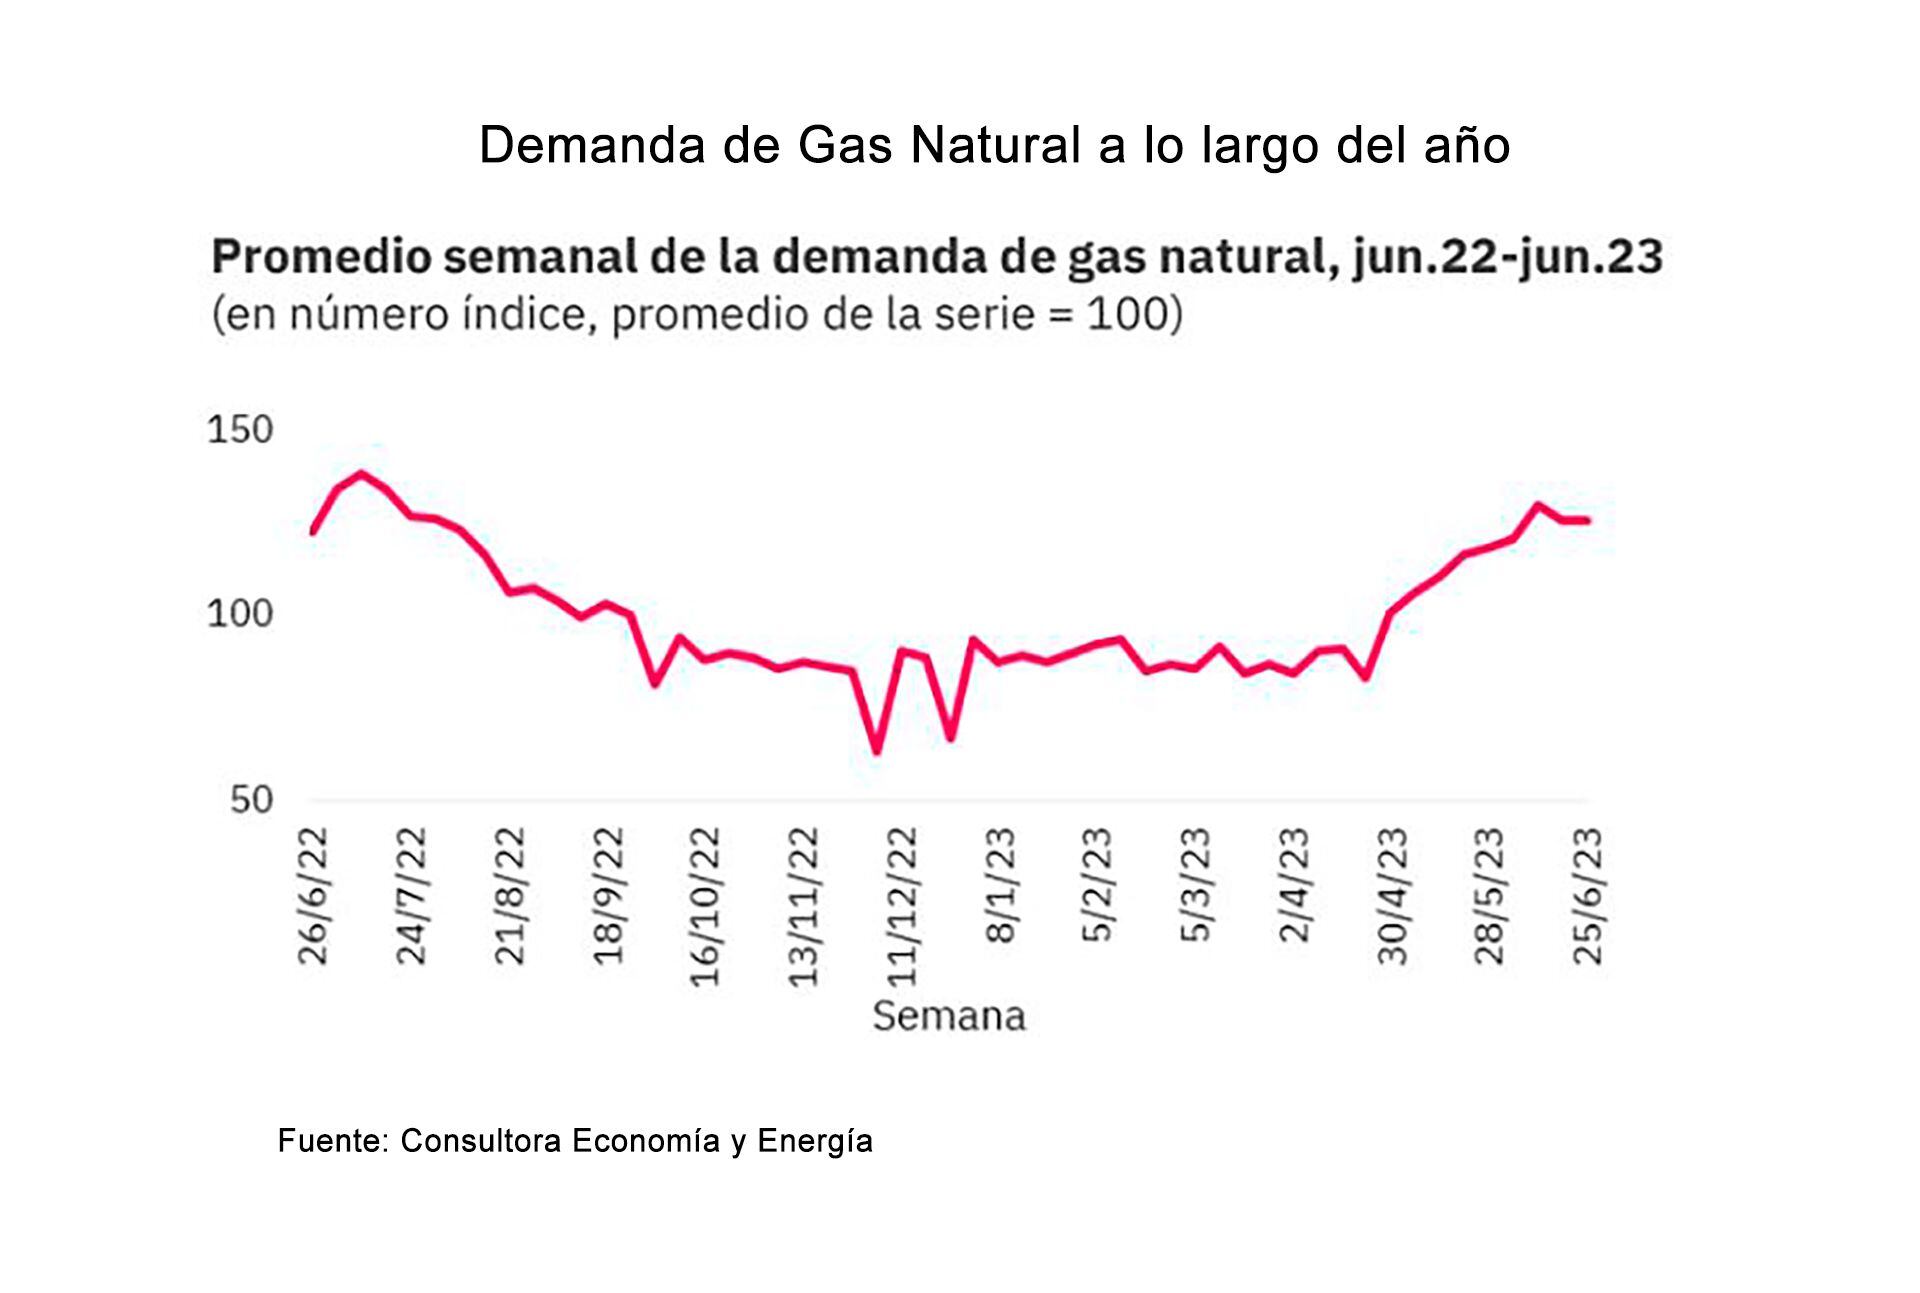 Evolución de la demanda de gas a lo largo de los últimos 12 meses. El pico de consumo invernal empieza a fines de abril y continúa hasta el fin del invierno